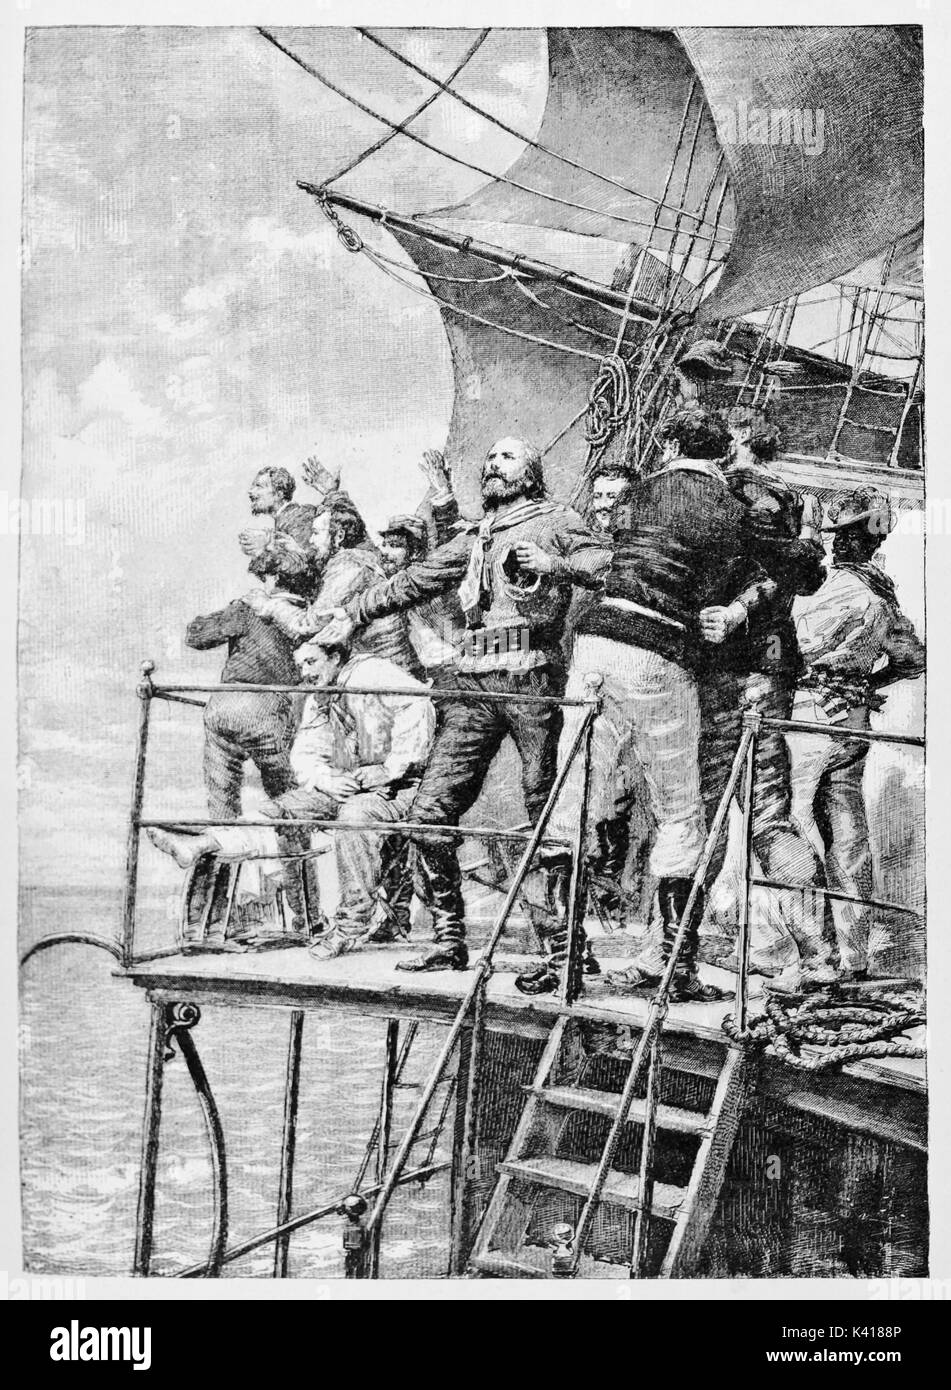 Detail von Garibaldi in den Himmel schauen, an Bord eines alten Schiffes mit seiner Crew. Durch E.Matania auf Garibaldi e i Suoi Tempi Mailand Italien 1884 Garibaldi an Bord veröffentlicht. Stockfoto